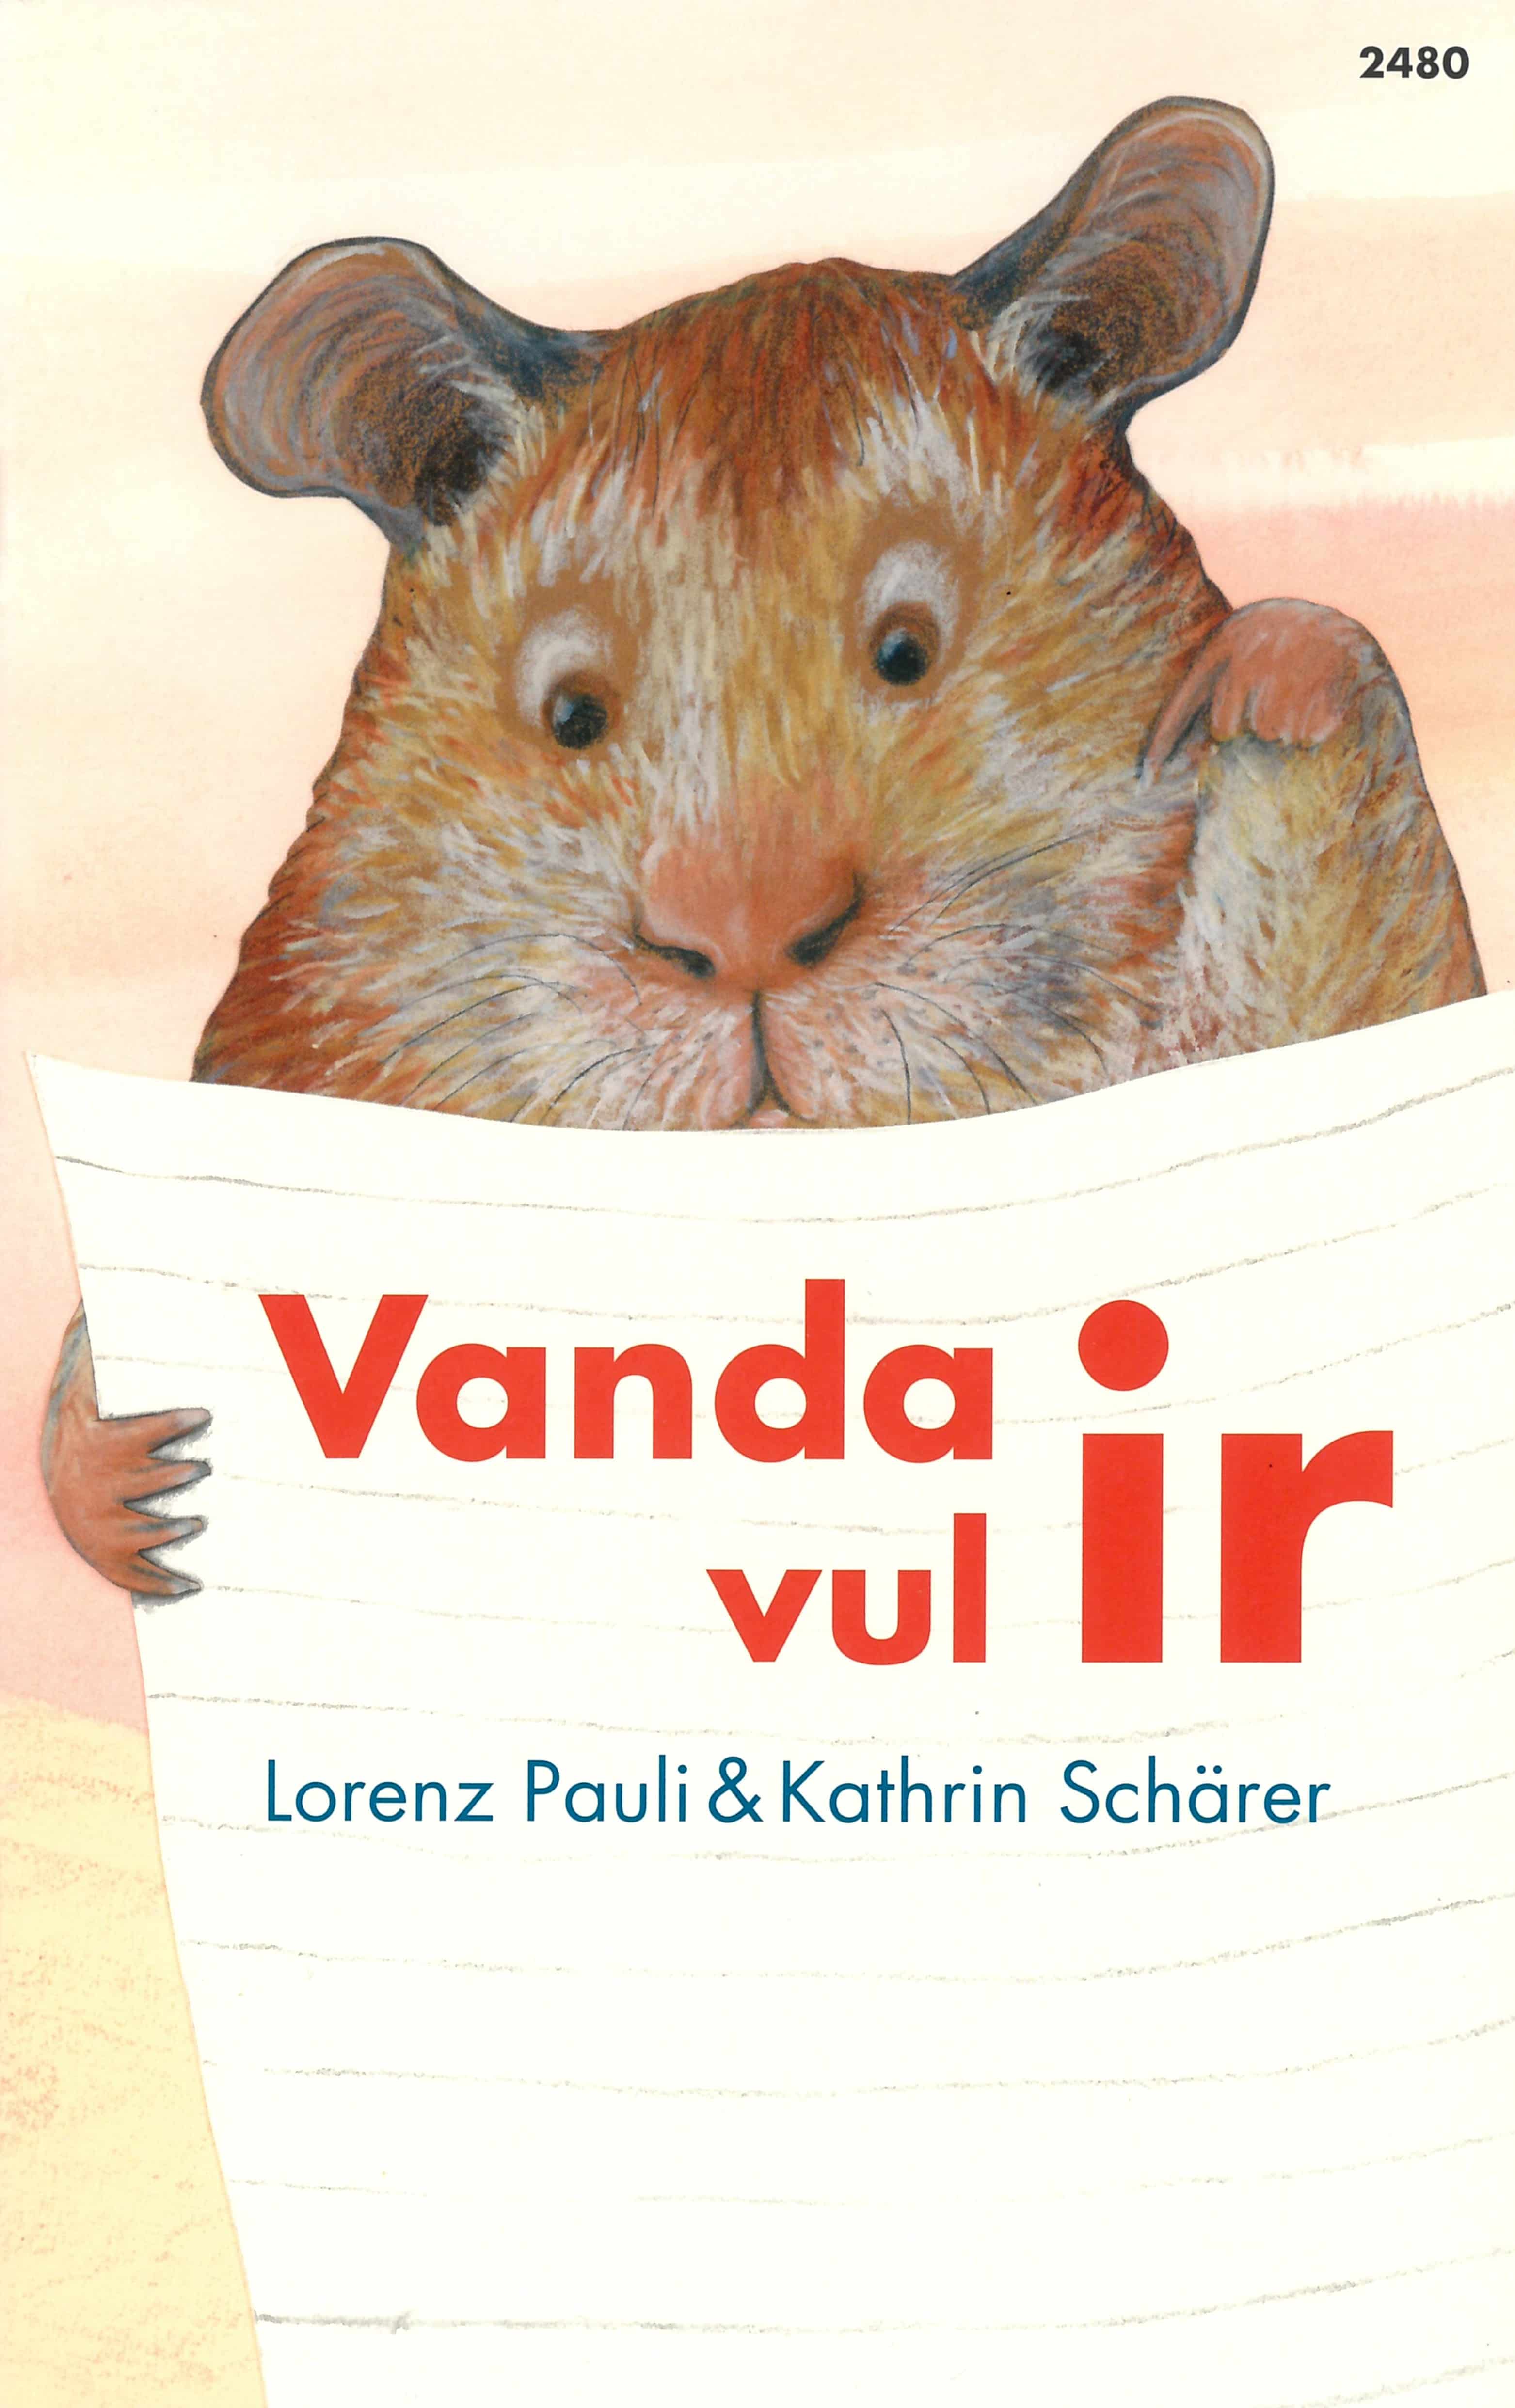 Vanda vul ir, ein Kinderbuch von Lorenz Pauli, Illustration von Kathrin Schaerer, SJW Verlag, Erstlesetext